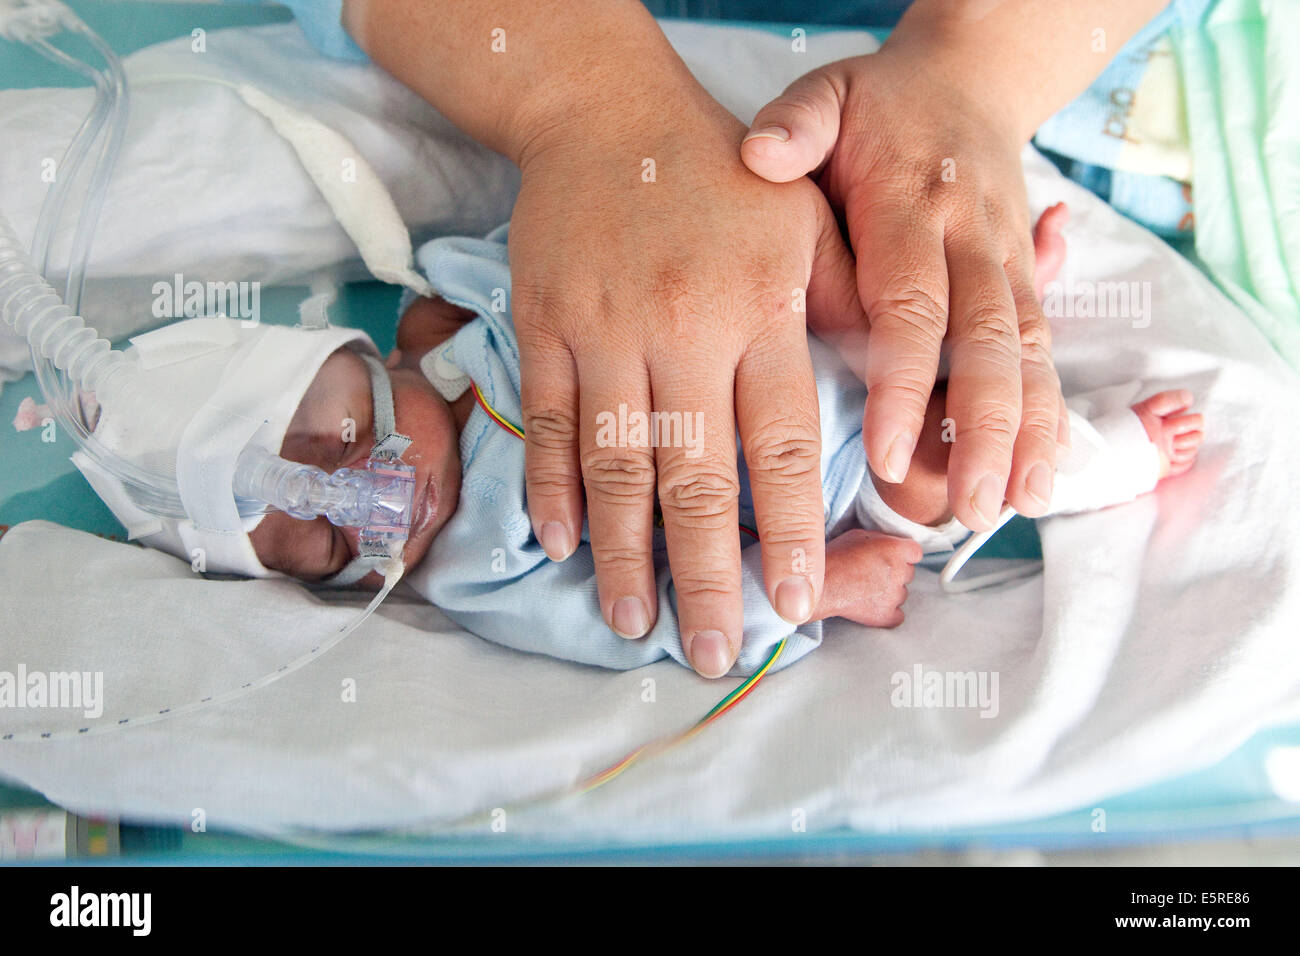 Vorzeitigen Neugeborenen unterstellt Unterstützung der Atmung, indem ihre Hände über ihr Baby zu beruhigen, Neonatalogy Mutter Stockfoto